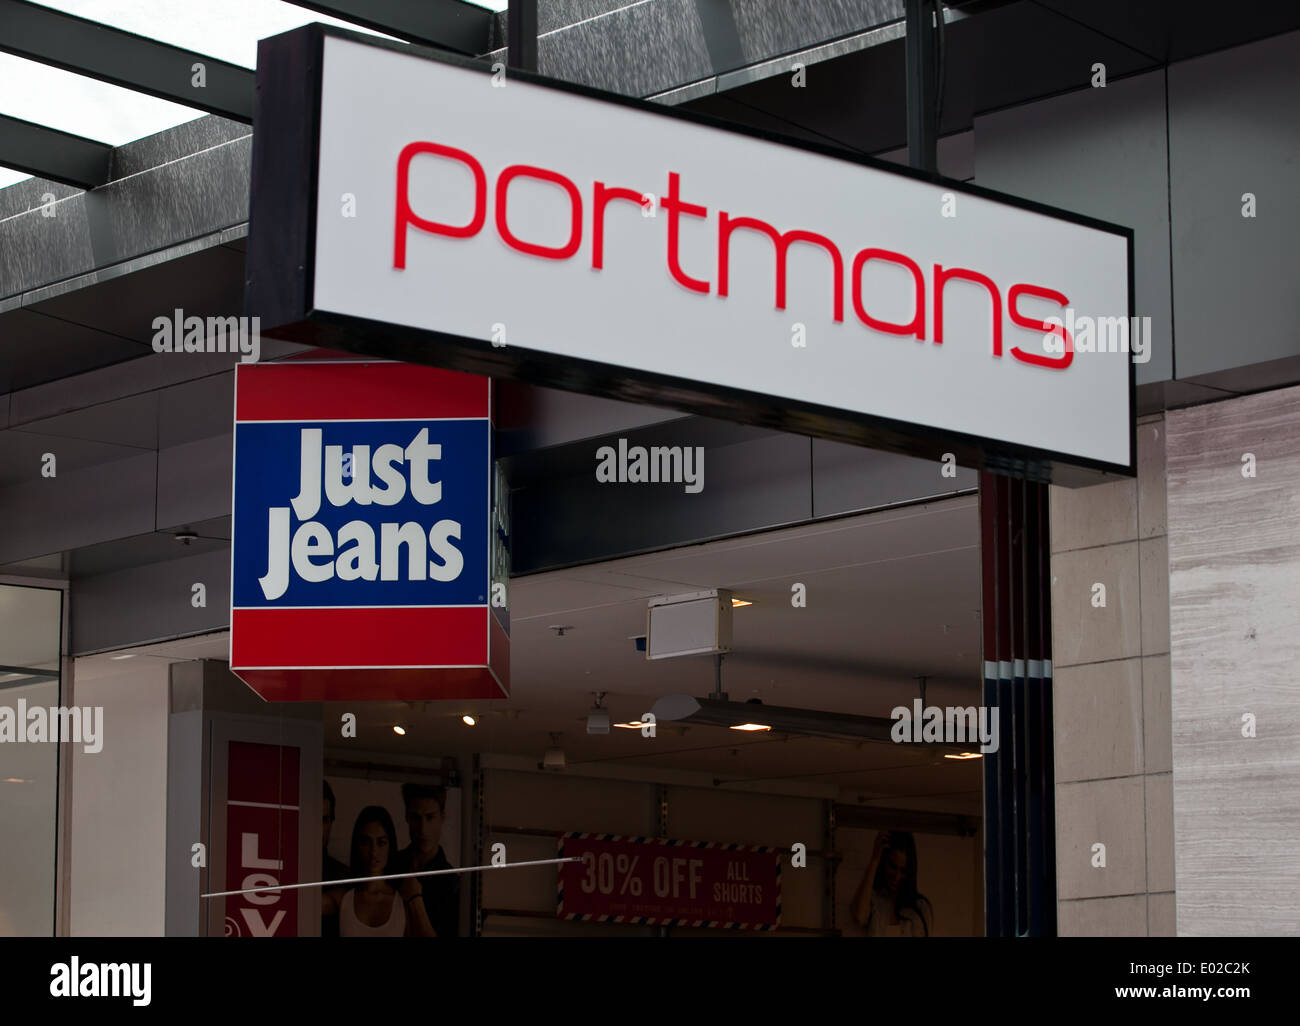 Portmans & Just Jeans stores, Melbourne Stock Photo - Alamy